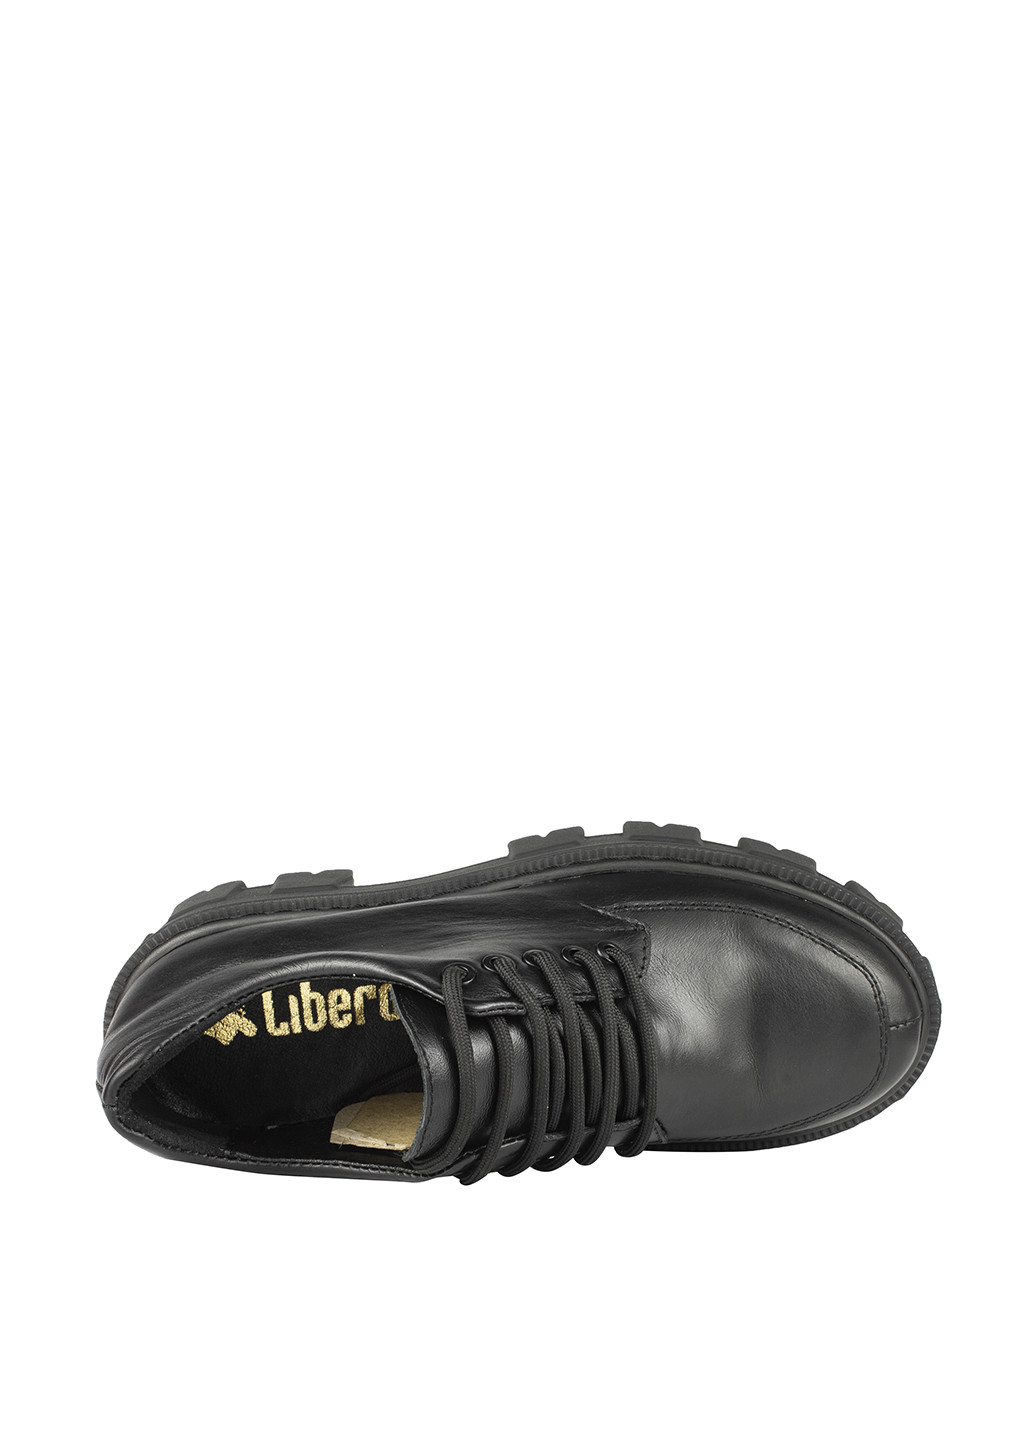 Туфли Libero на среднем каблуке на тракторной подошве